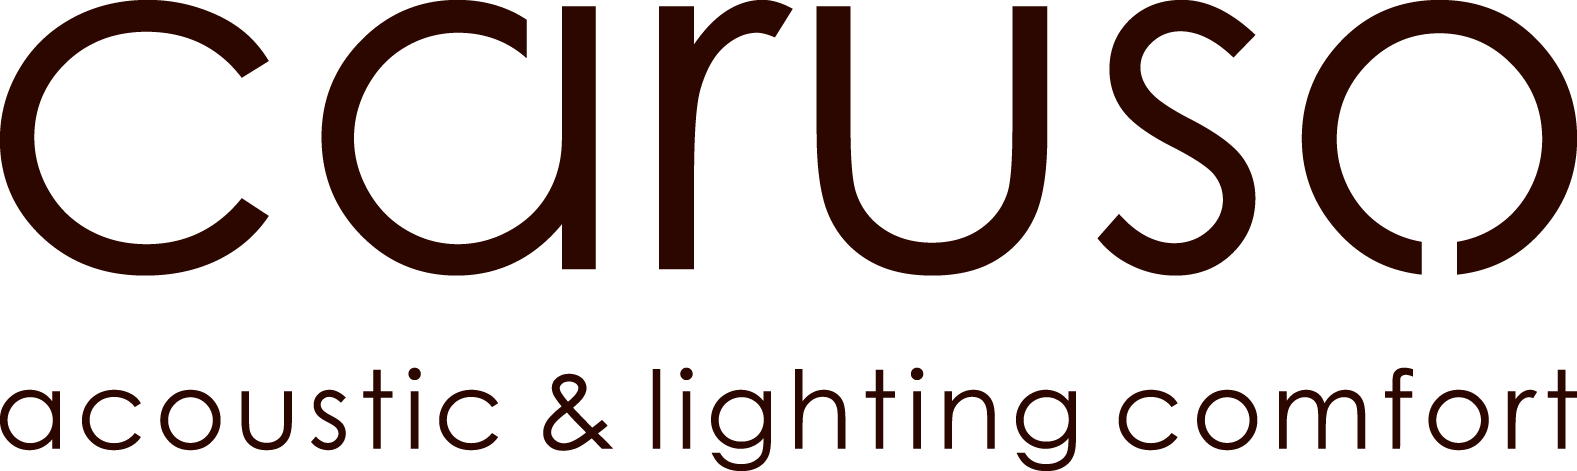 Caruso Logo